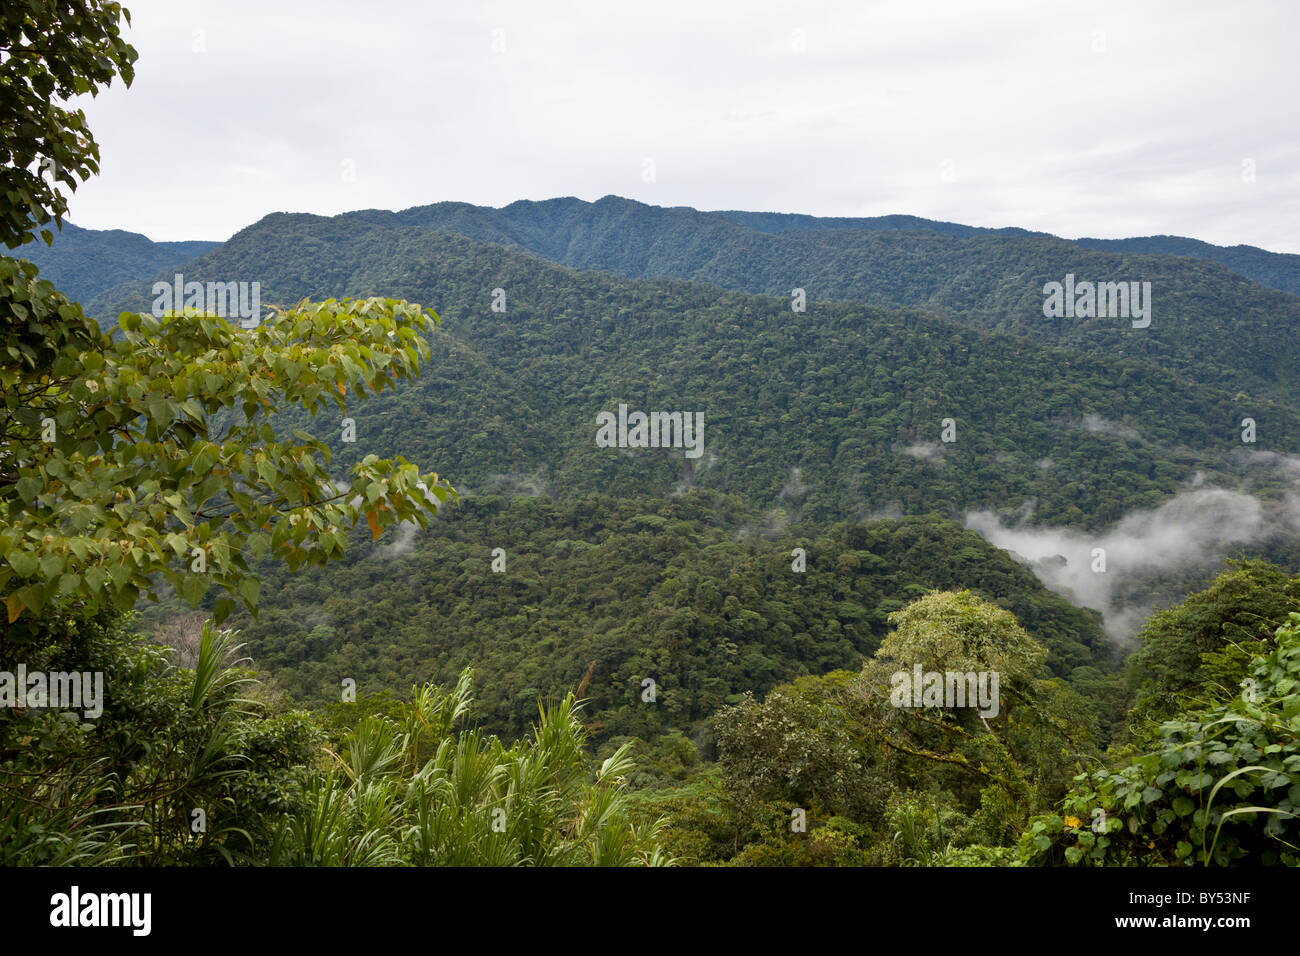 La selva tropical y bosque nublado abarcan el Parque Nacional Braulio Carrillo en la provincia de Heredia, Costa Rica. Foto de stock